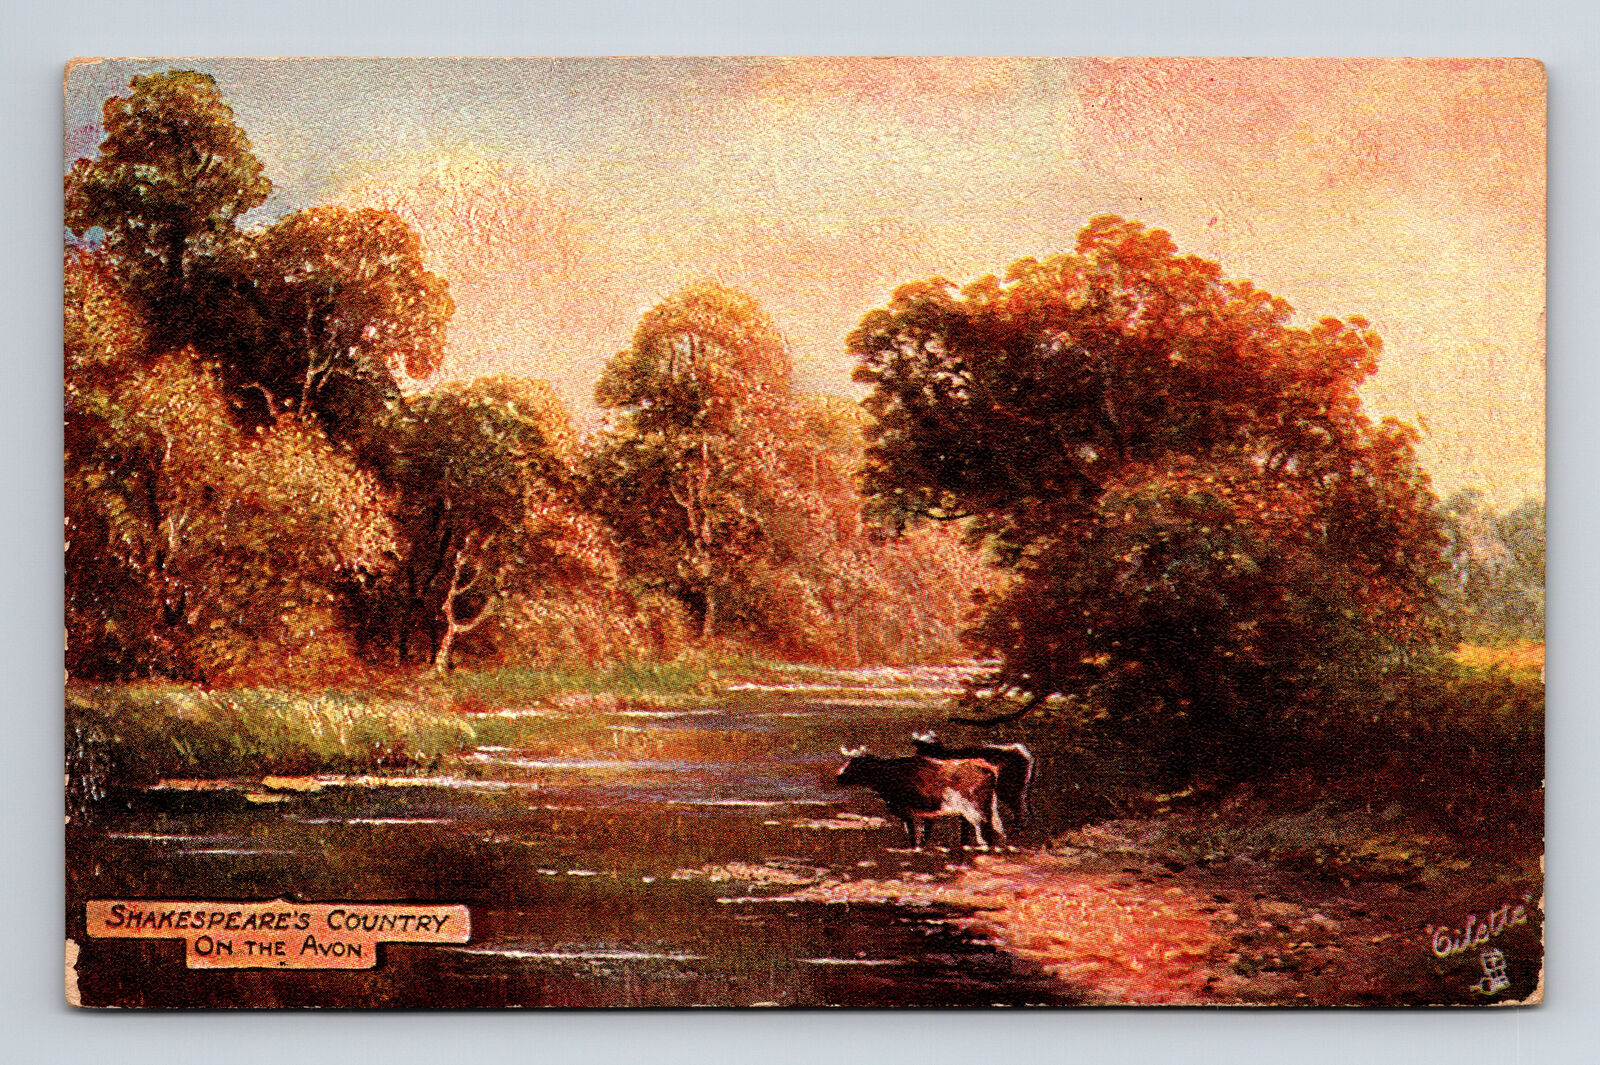 Landscape Stratford-On-Avon Shakespeare's Country Raphael Tucks Oilette Postcard